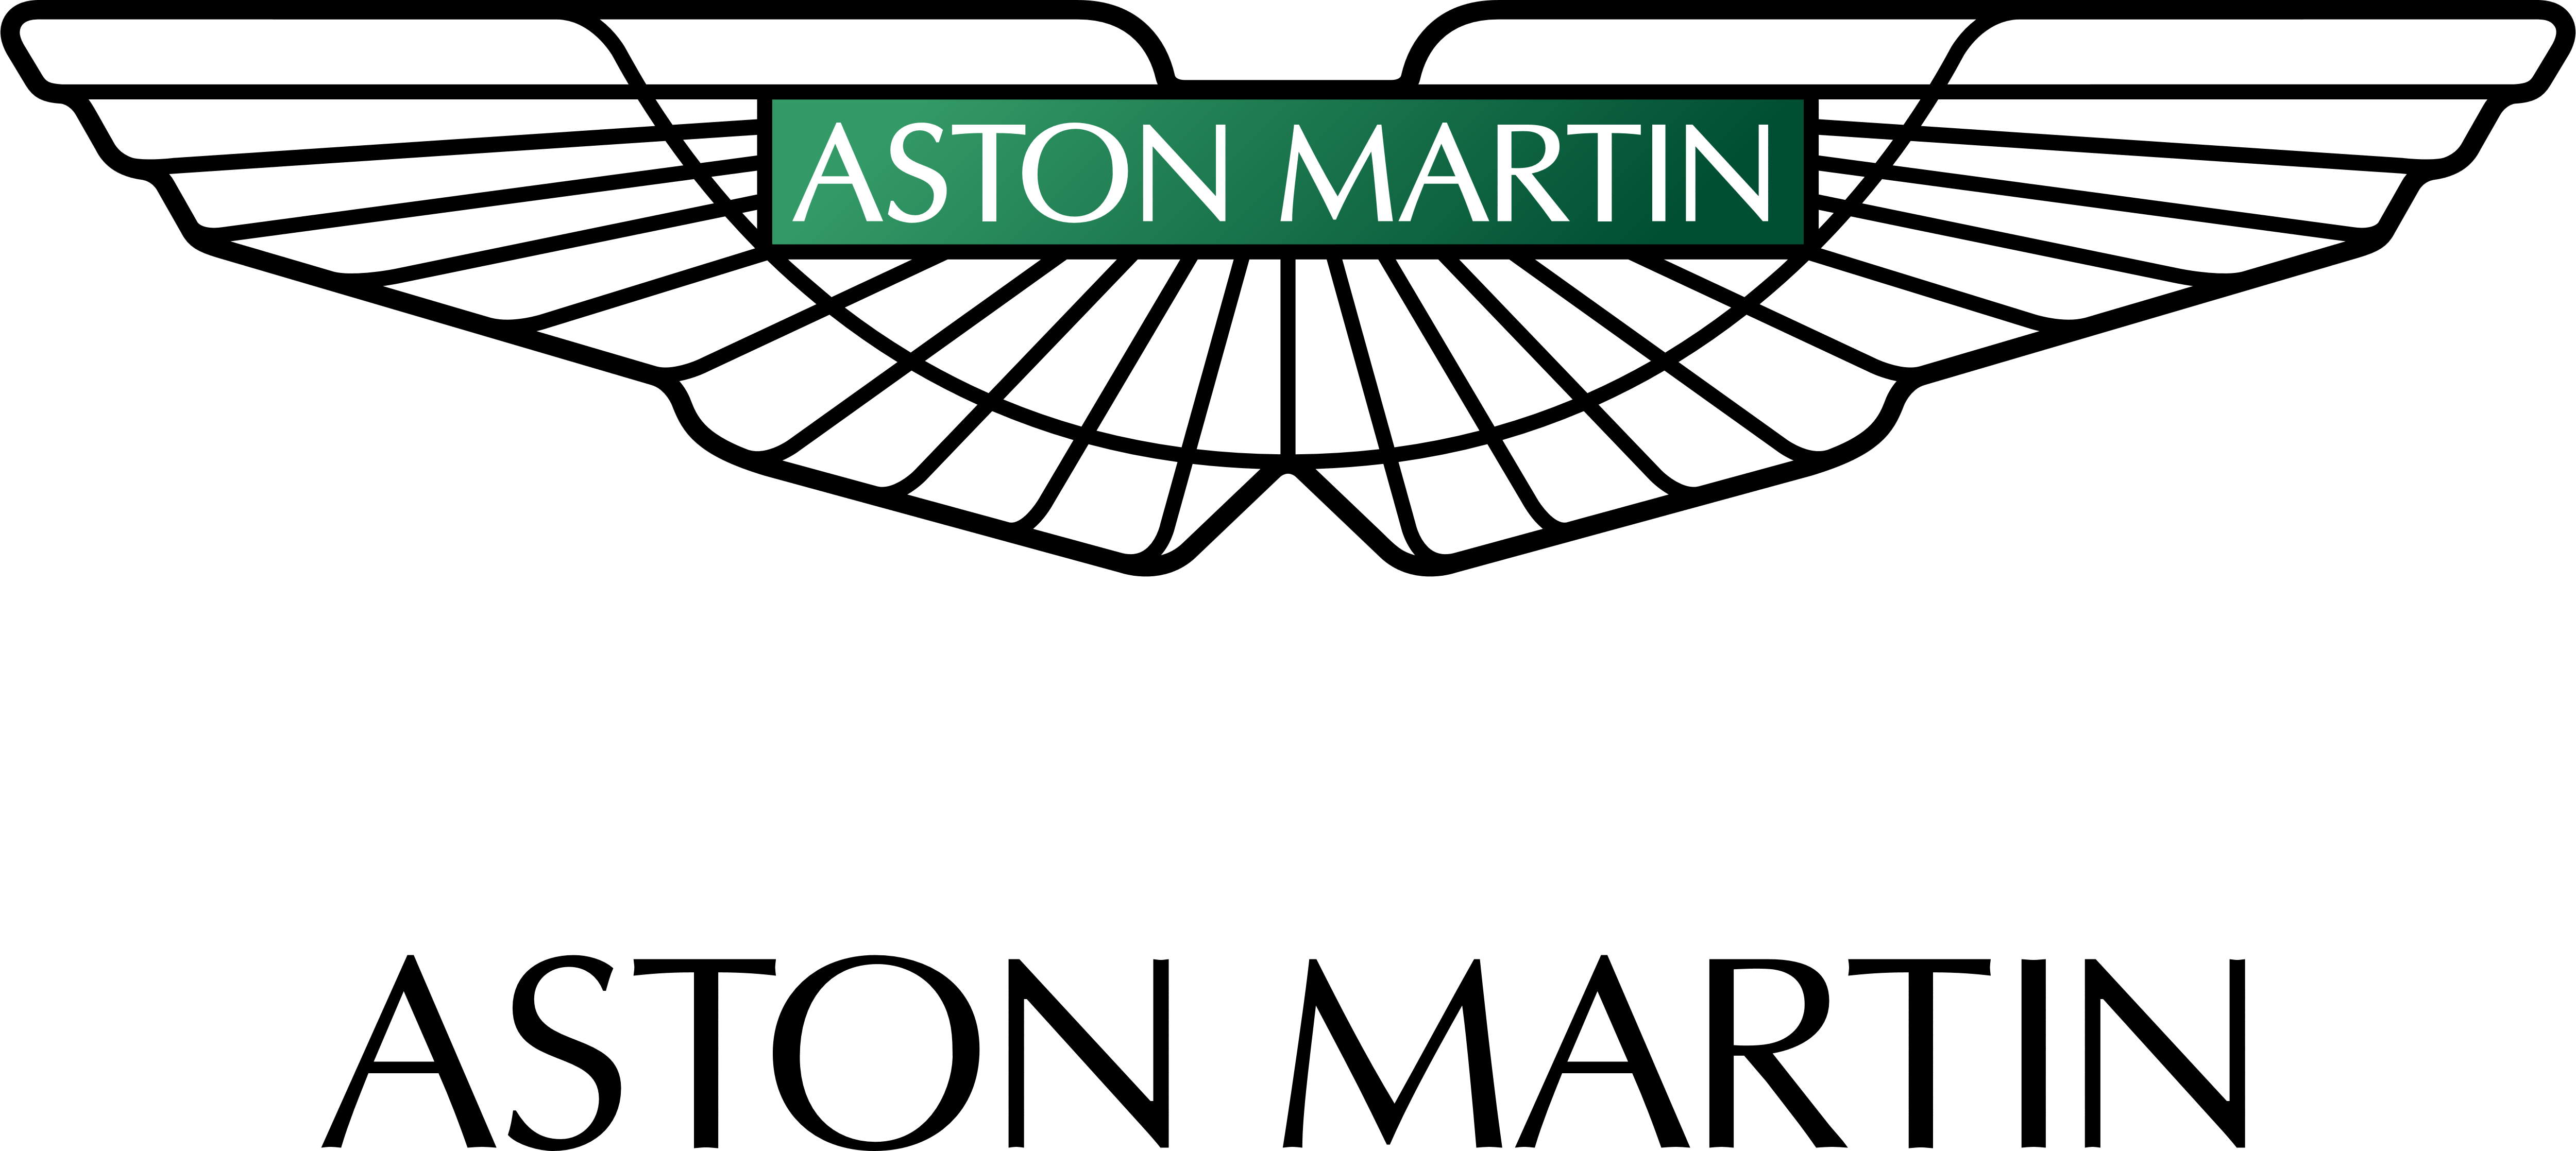 Download Logos - Aston Martin